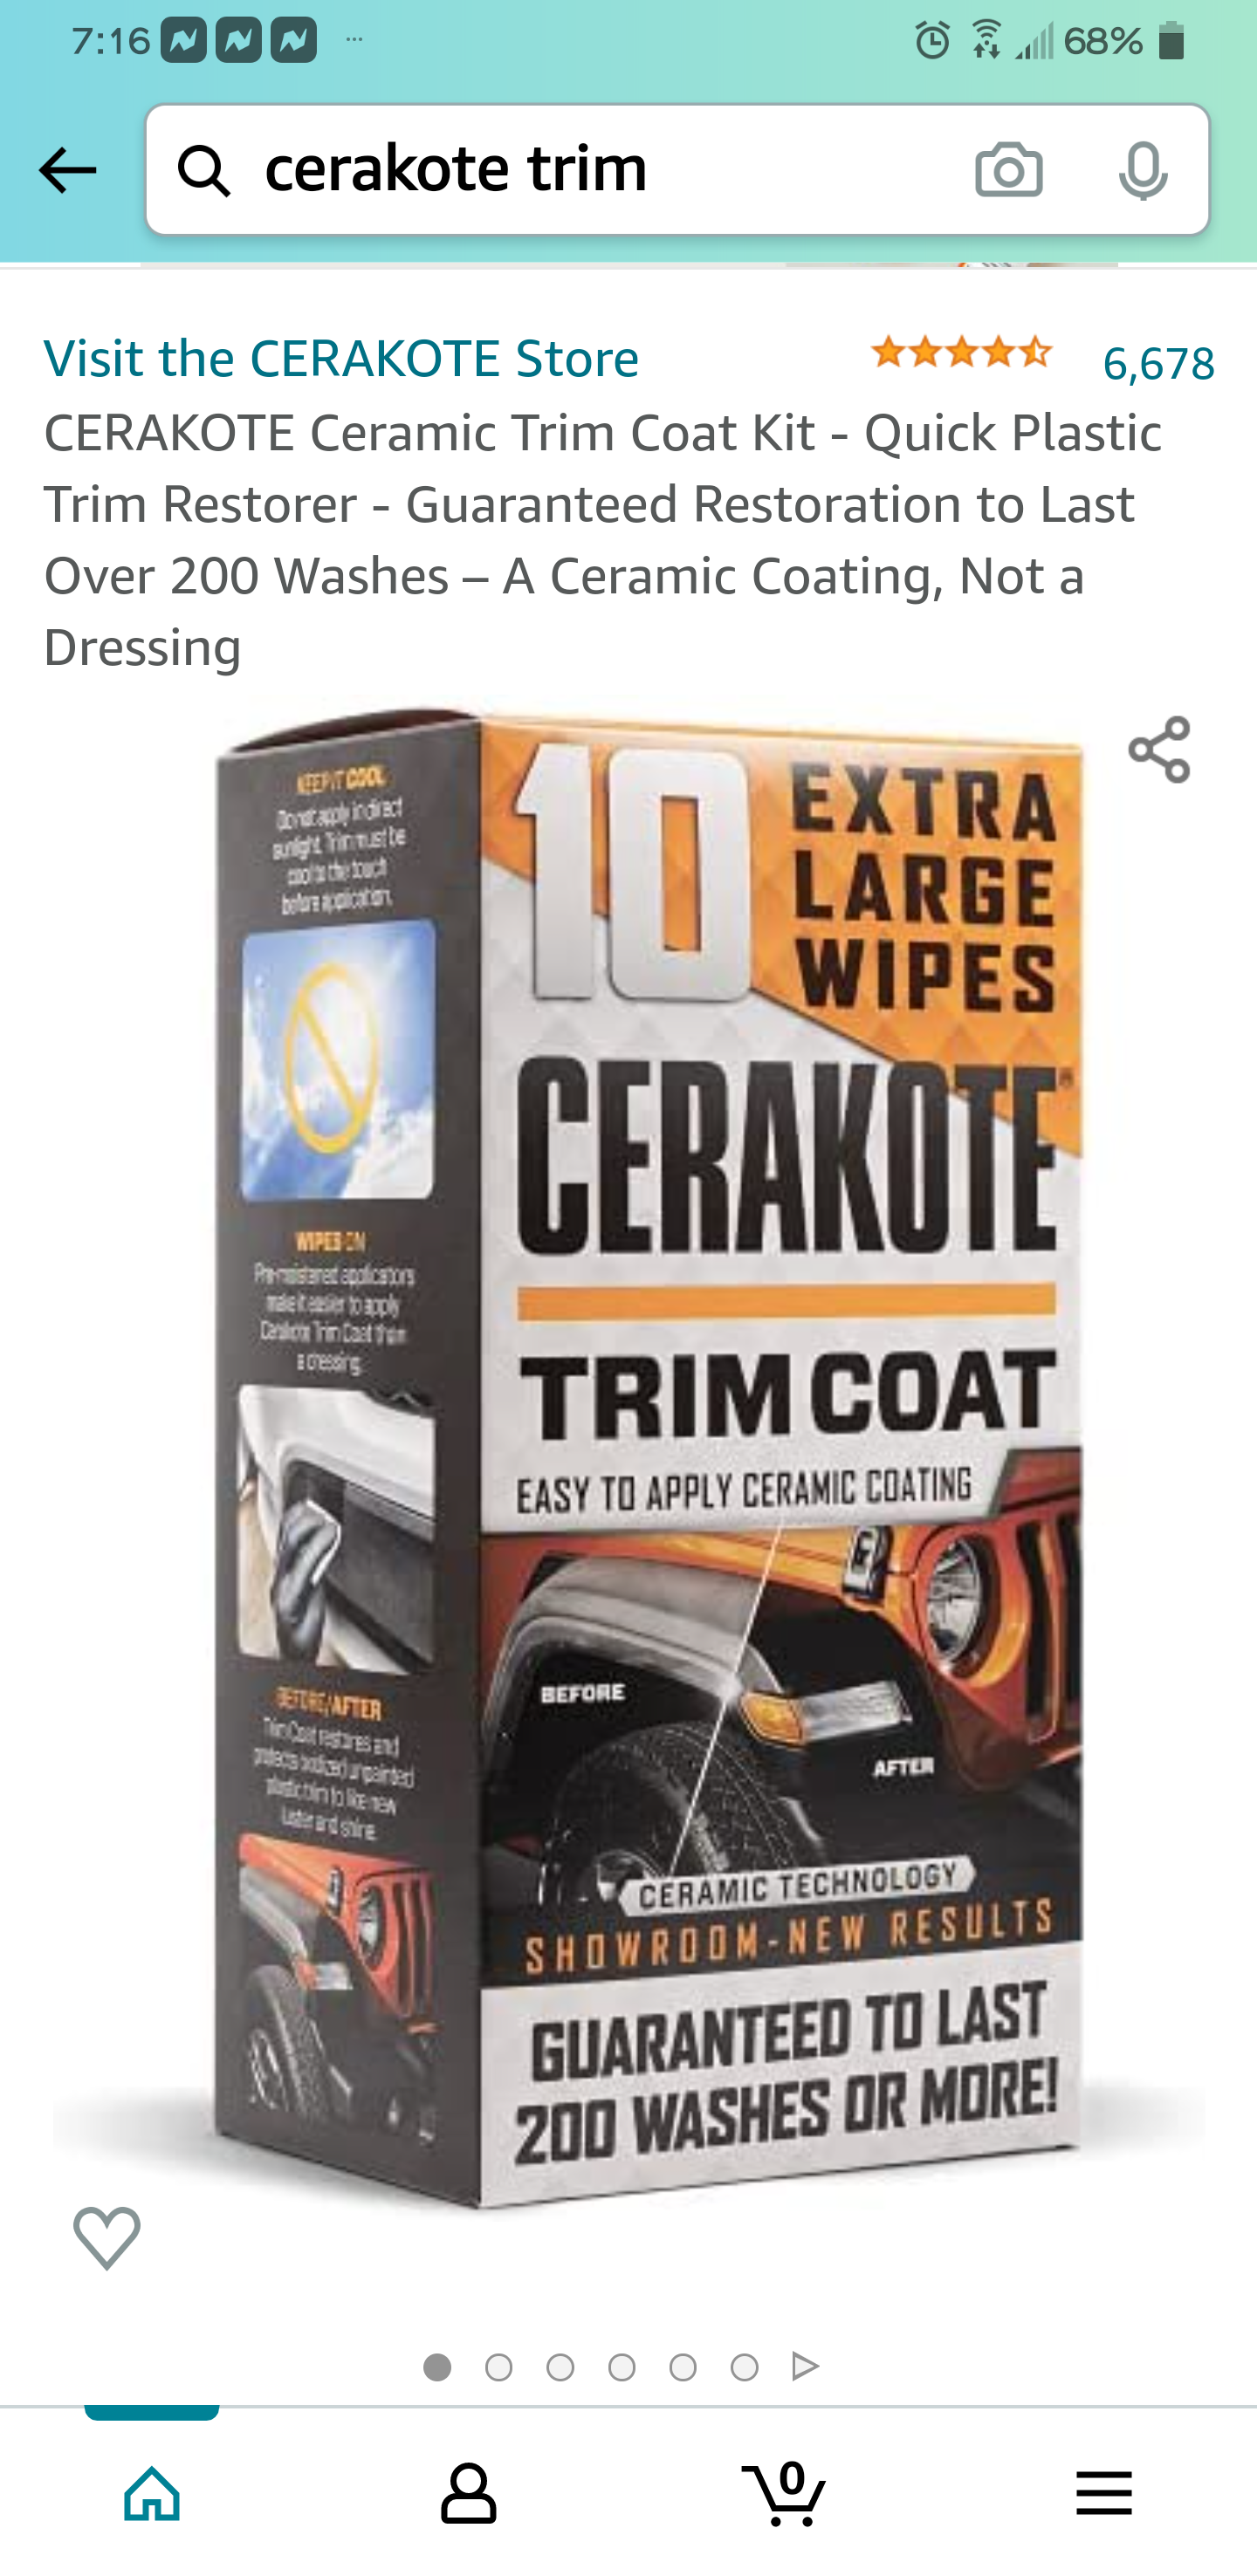 Cerakote Trim coating Caution